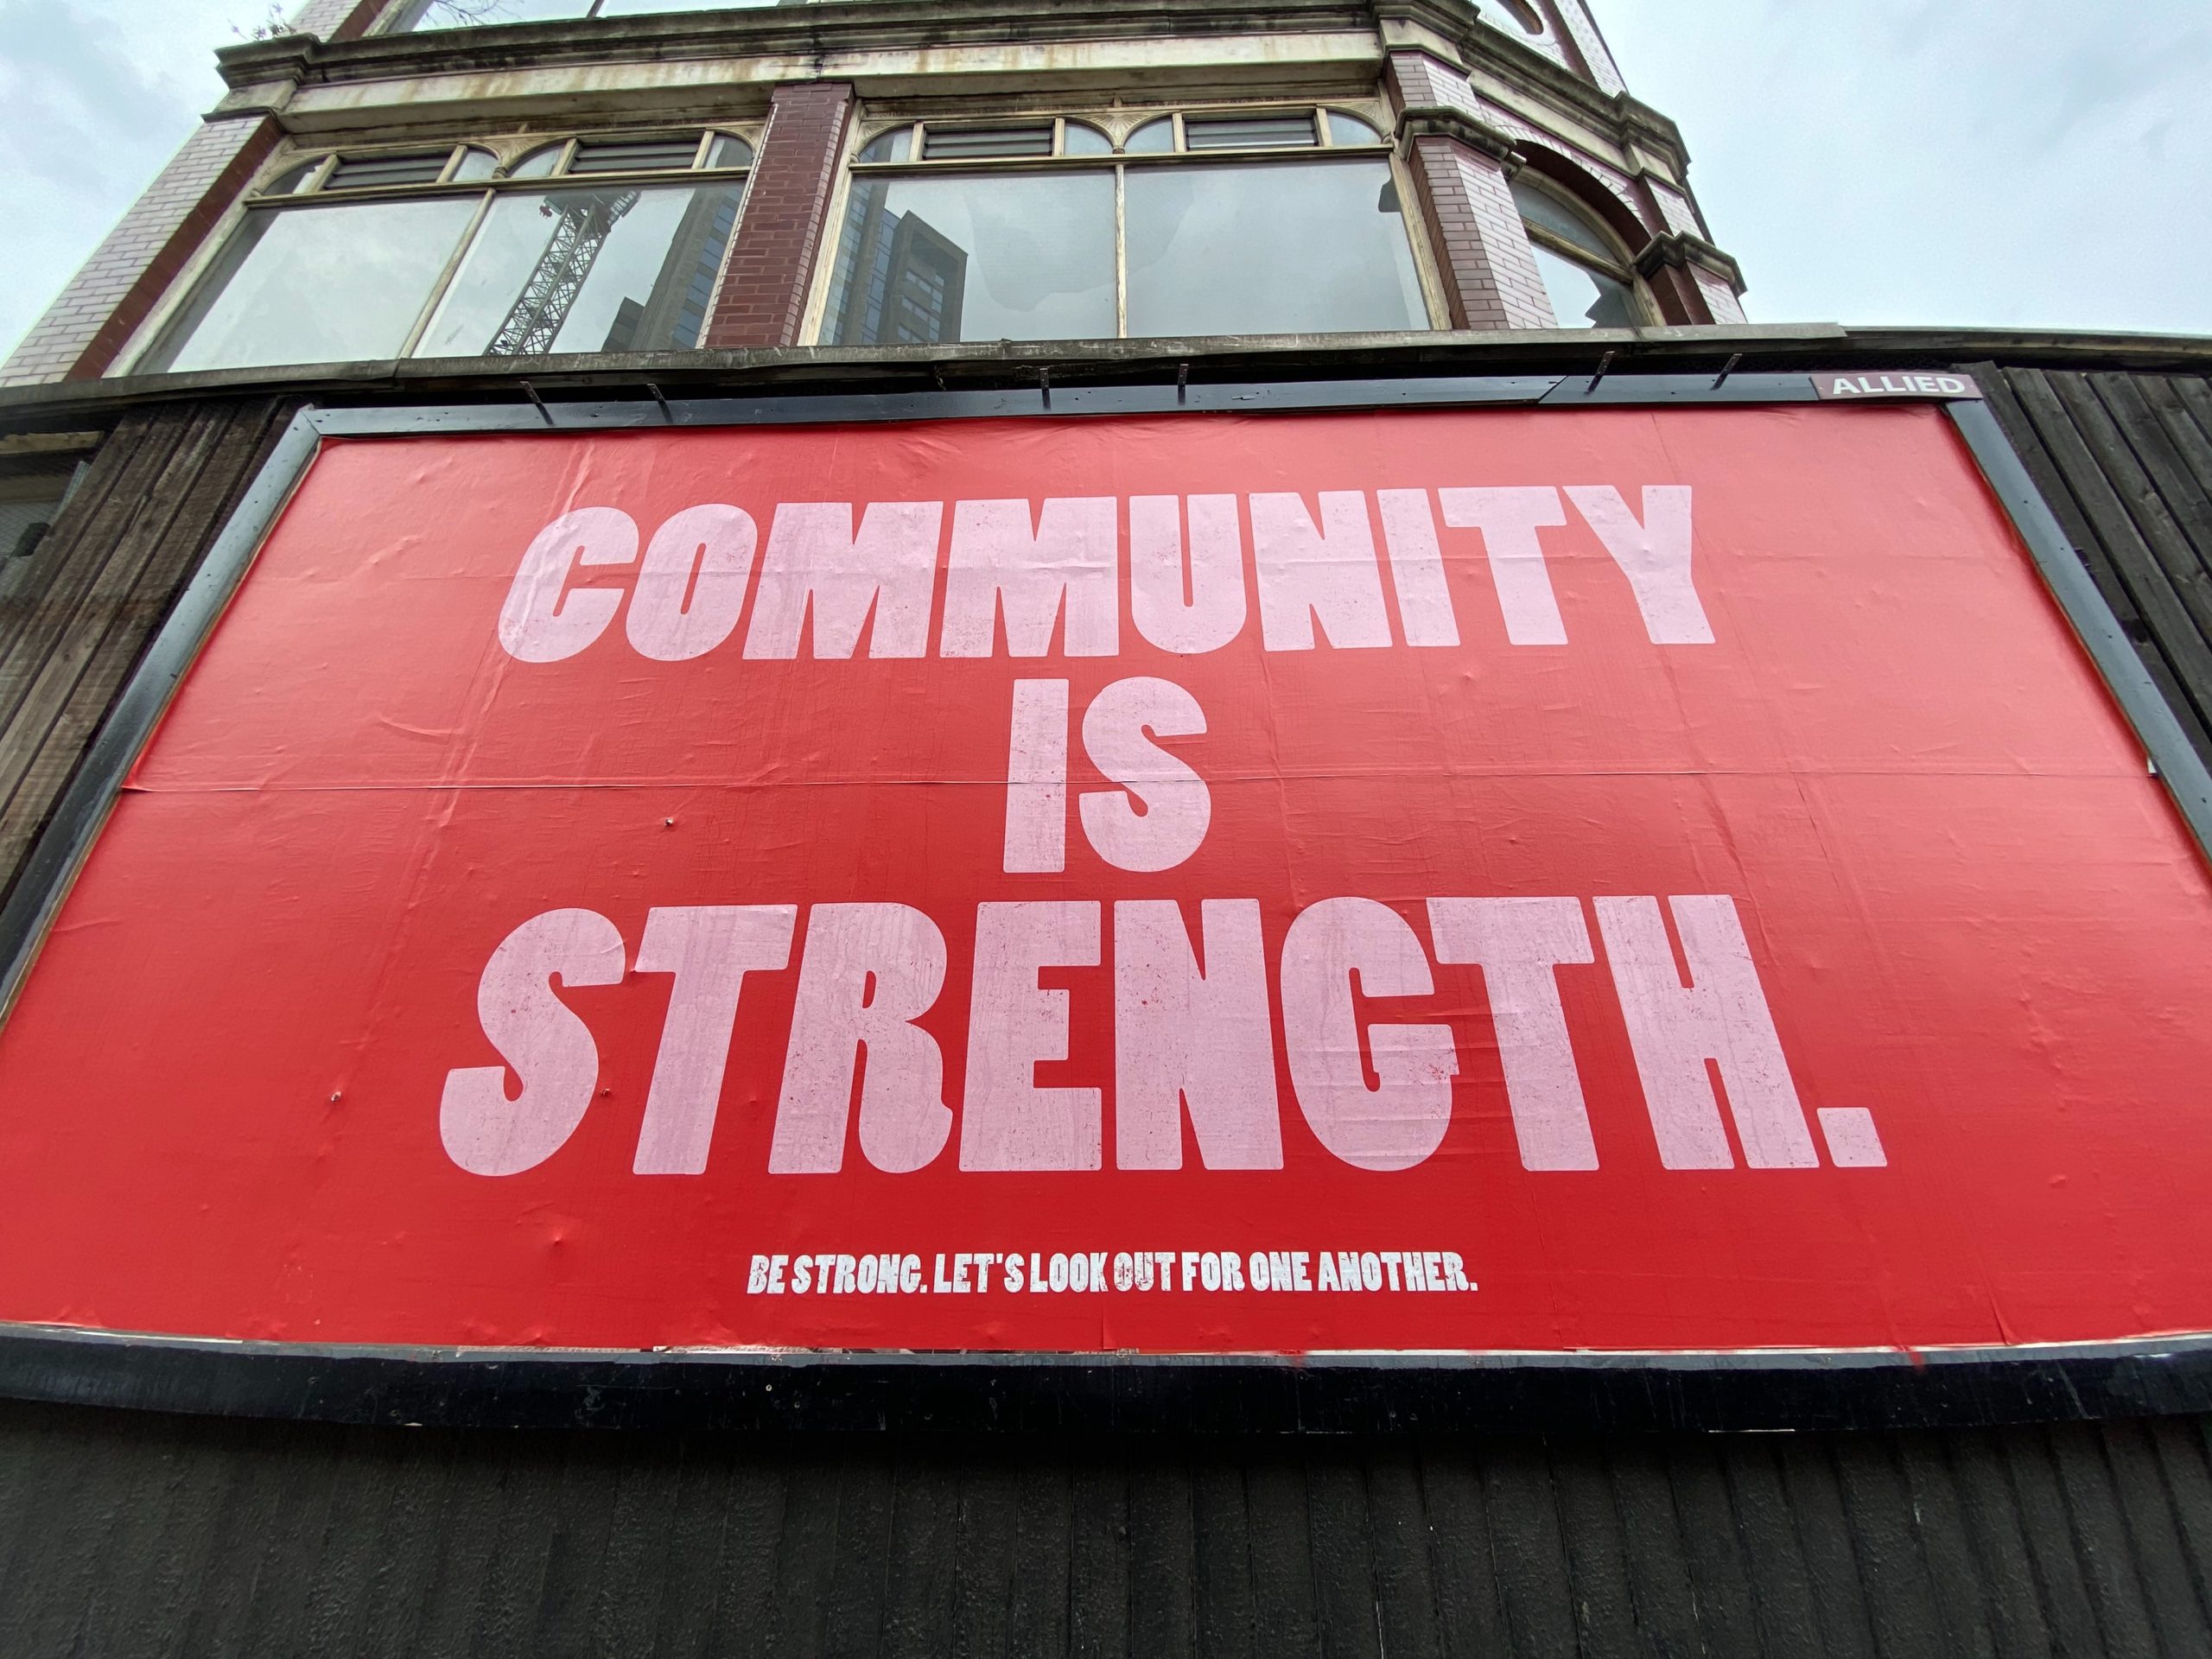 Billboard with 'Community is strength' written on it